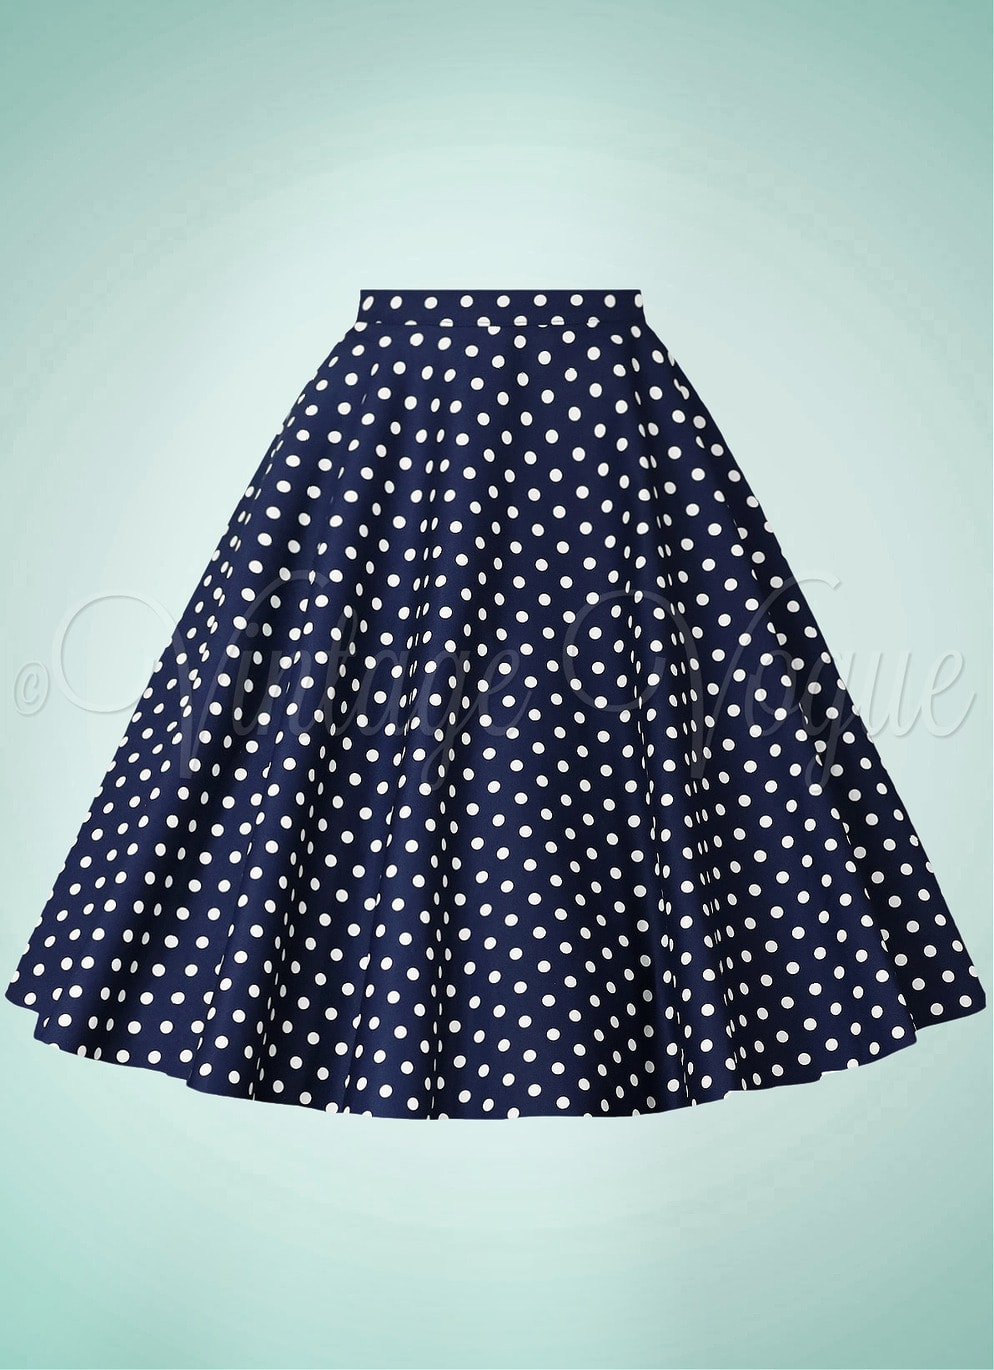 Banned 50er Jahre Retro Vintage Rockabilly High Waist Polka Dots Punkte Tellerrock Dot Days Skirt in Blau Navy Dunkelblau weiß gepunktet SK25567